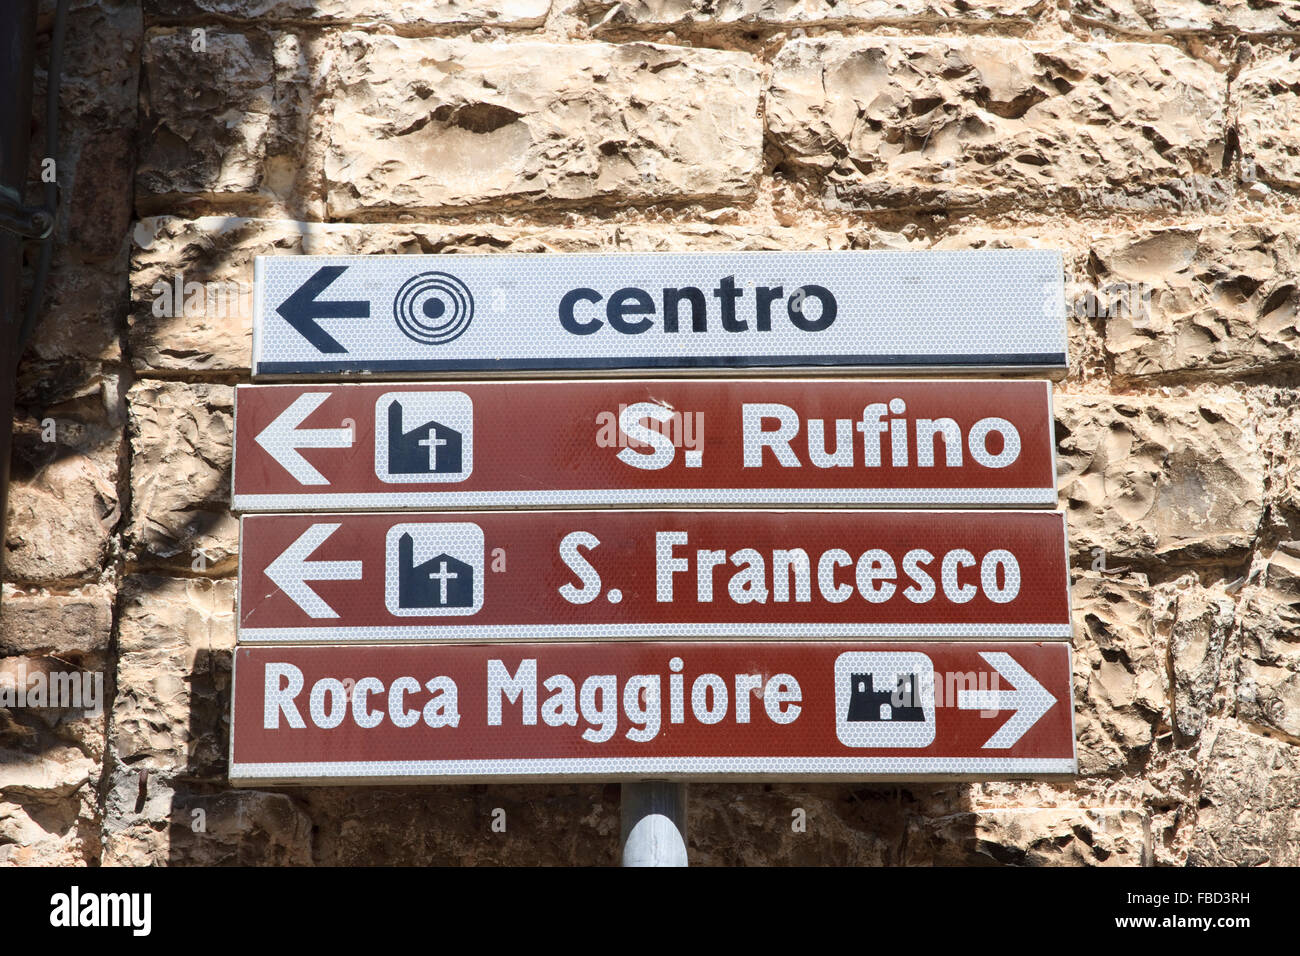 Segnaletica stradale italiana nella città di Assisi, Italia, che indica la strada per gli alberghi e i luoghi di interesse della zona. Foto Stock